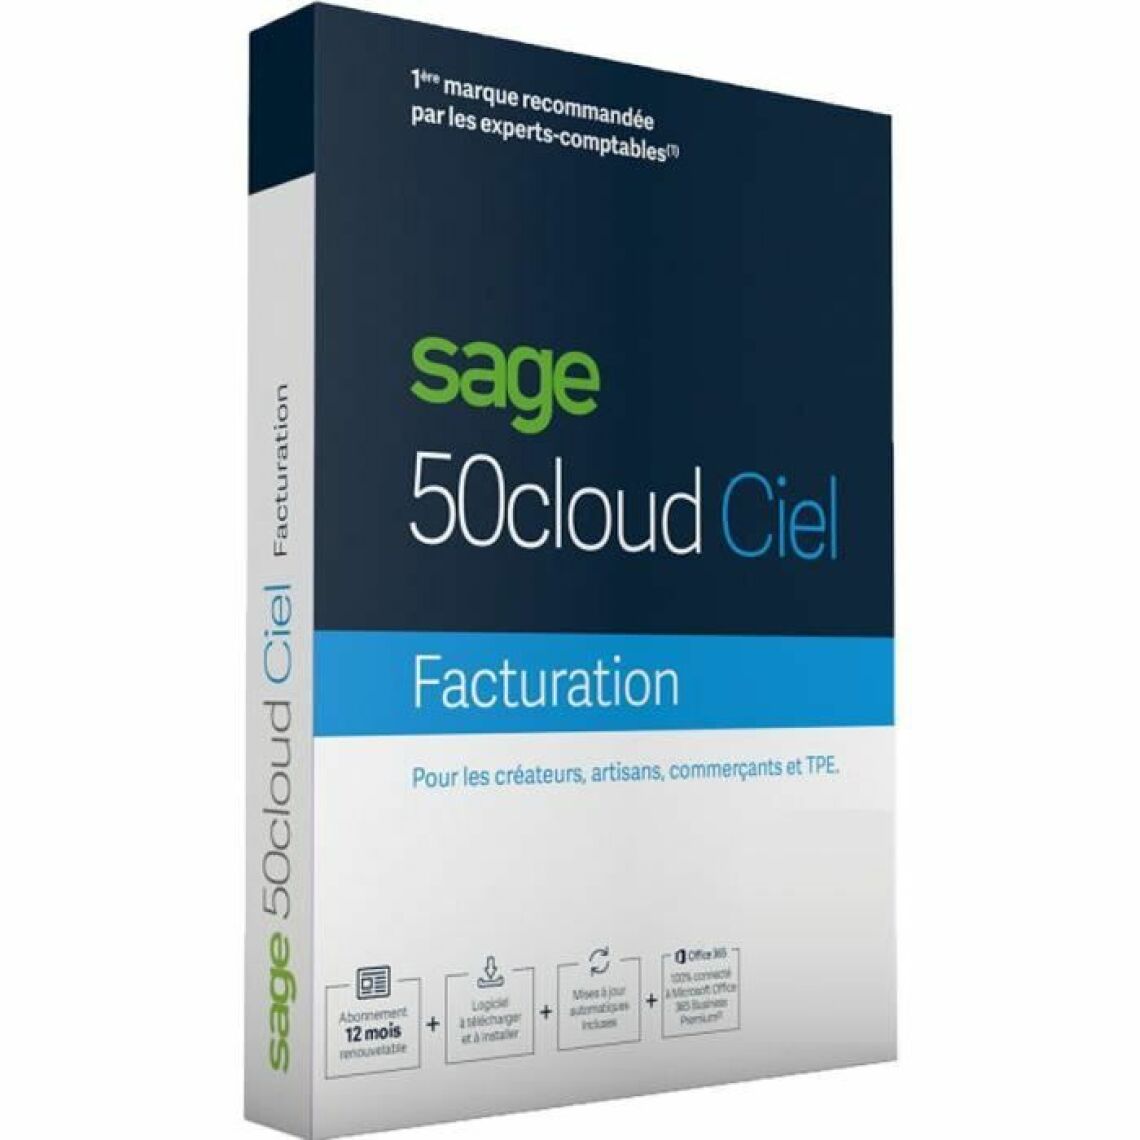 Sage - 50c Ciel Facturation (30 jours d assistance) - Métiers